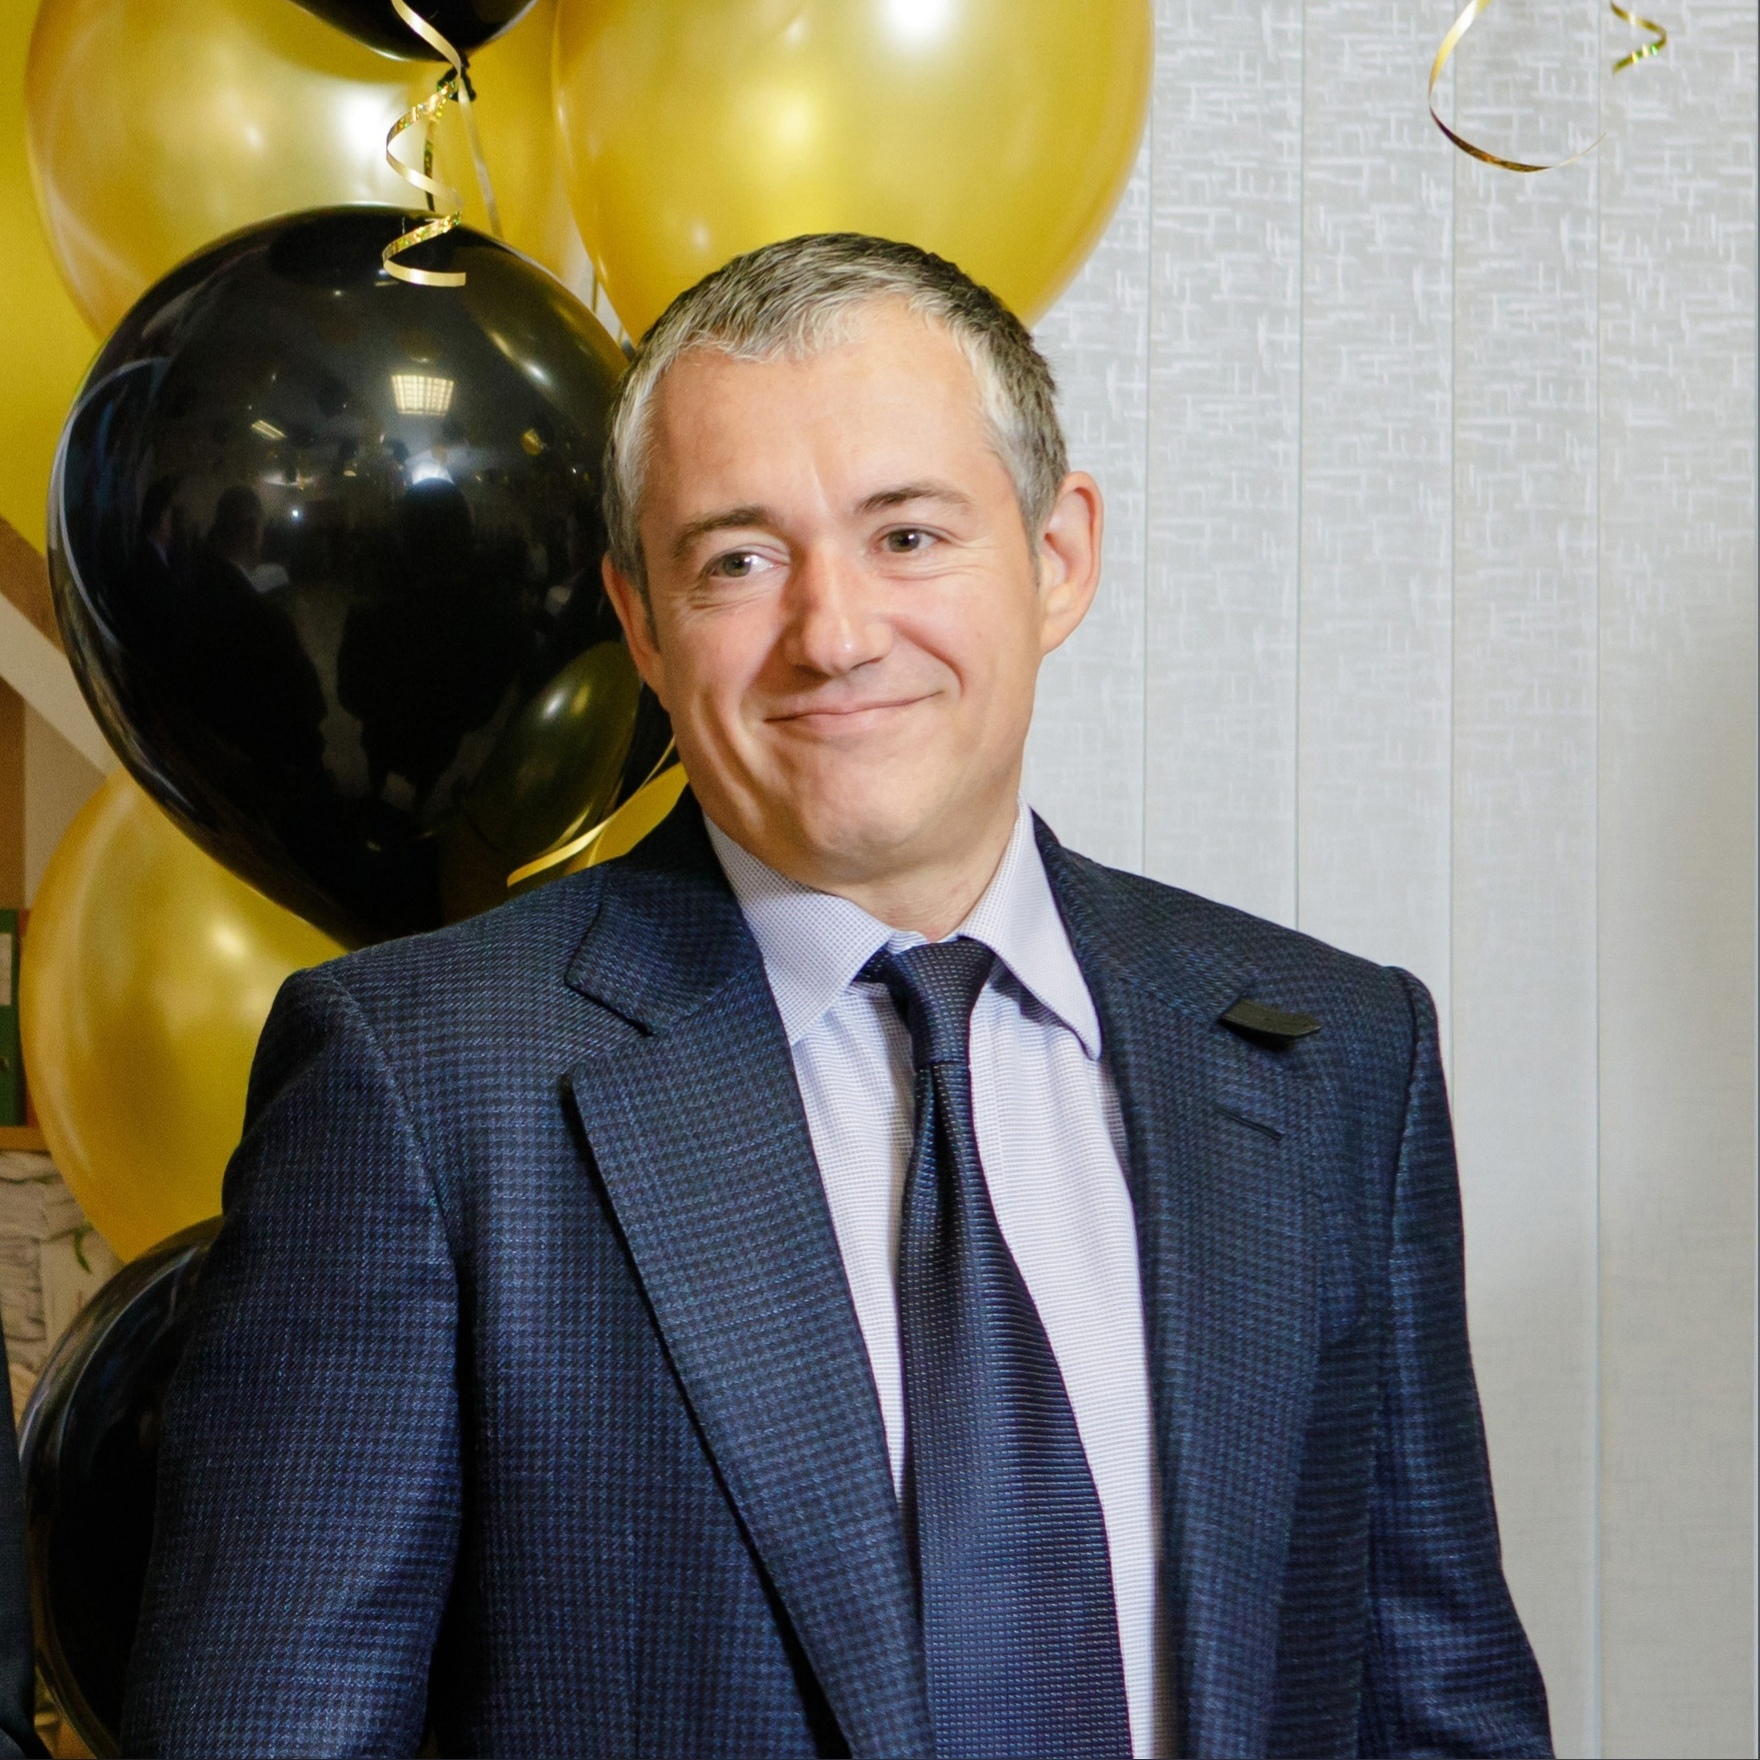 Коллектив АО «Третий парк» поздравляет с днем рождения генерального директора Кирилла Дьяковского!